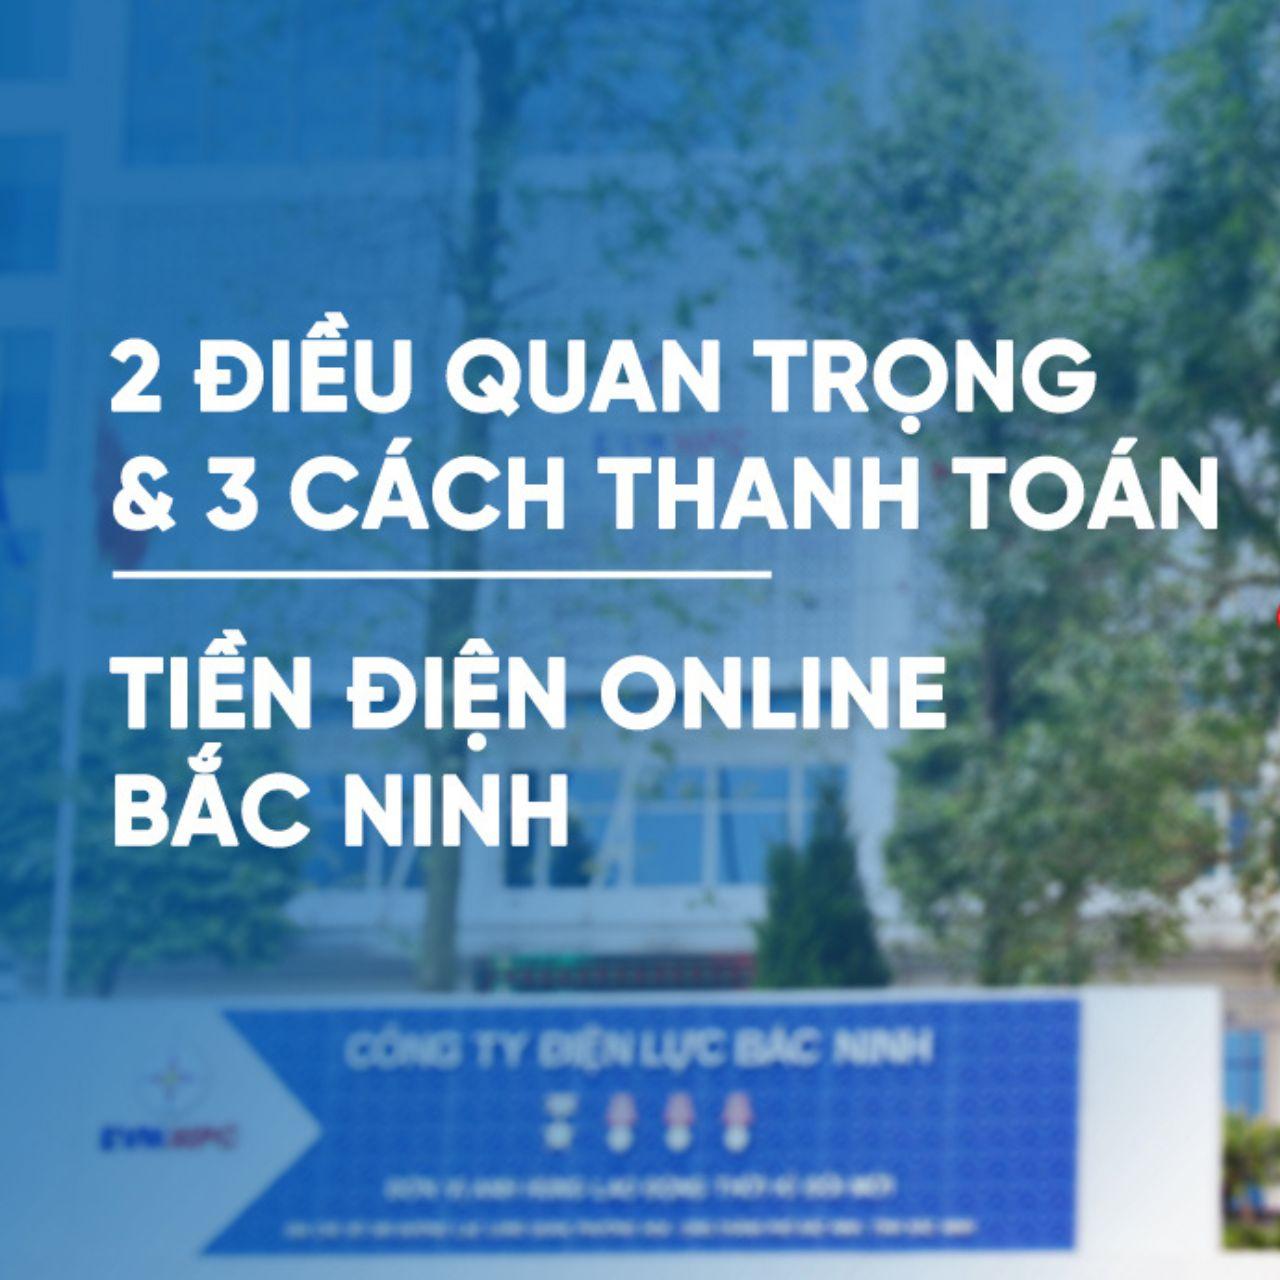 2 điều quan trọng & 3 cách thanh toán tiền điện online Bắc Ninh